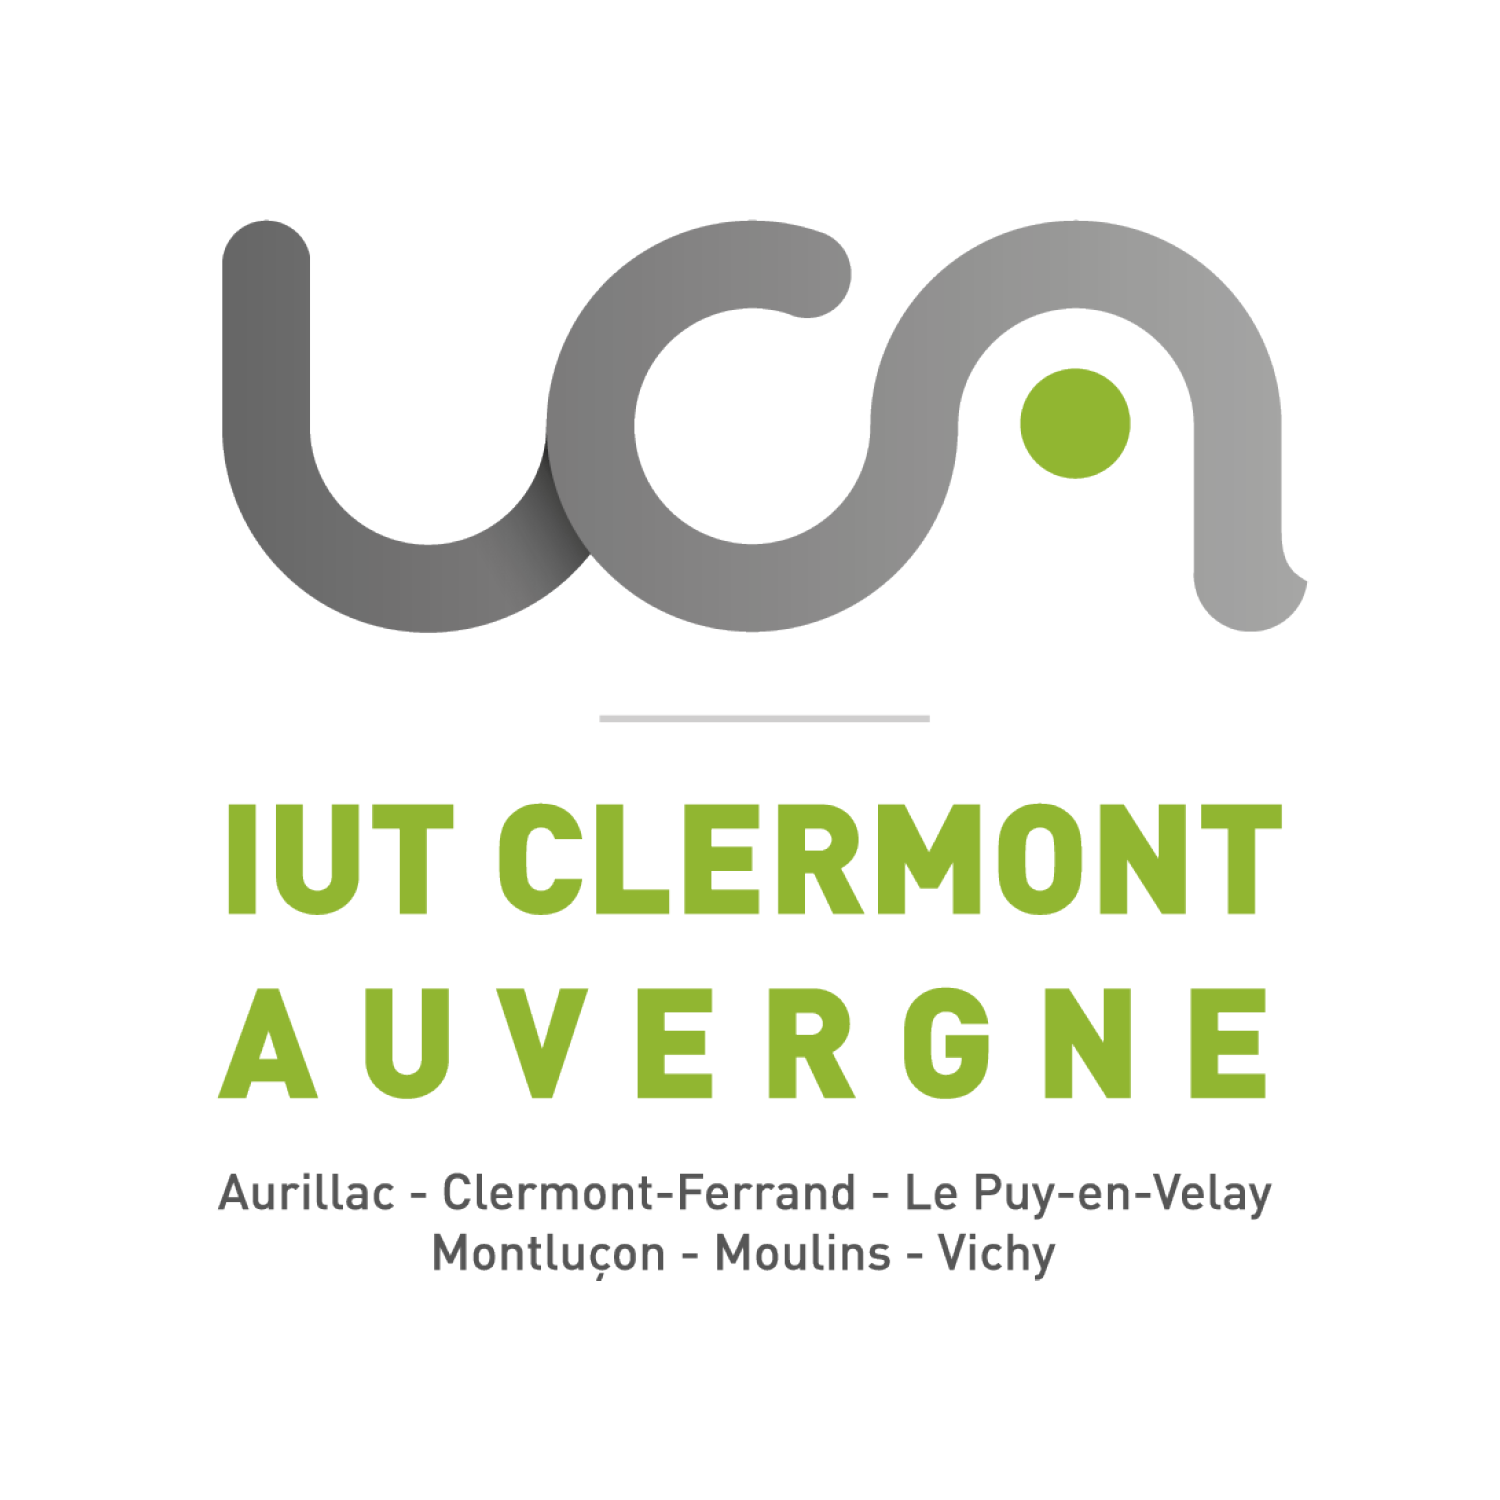 IUT Clermont Auvergne